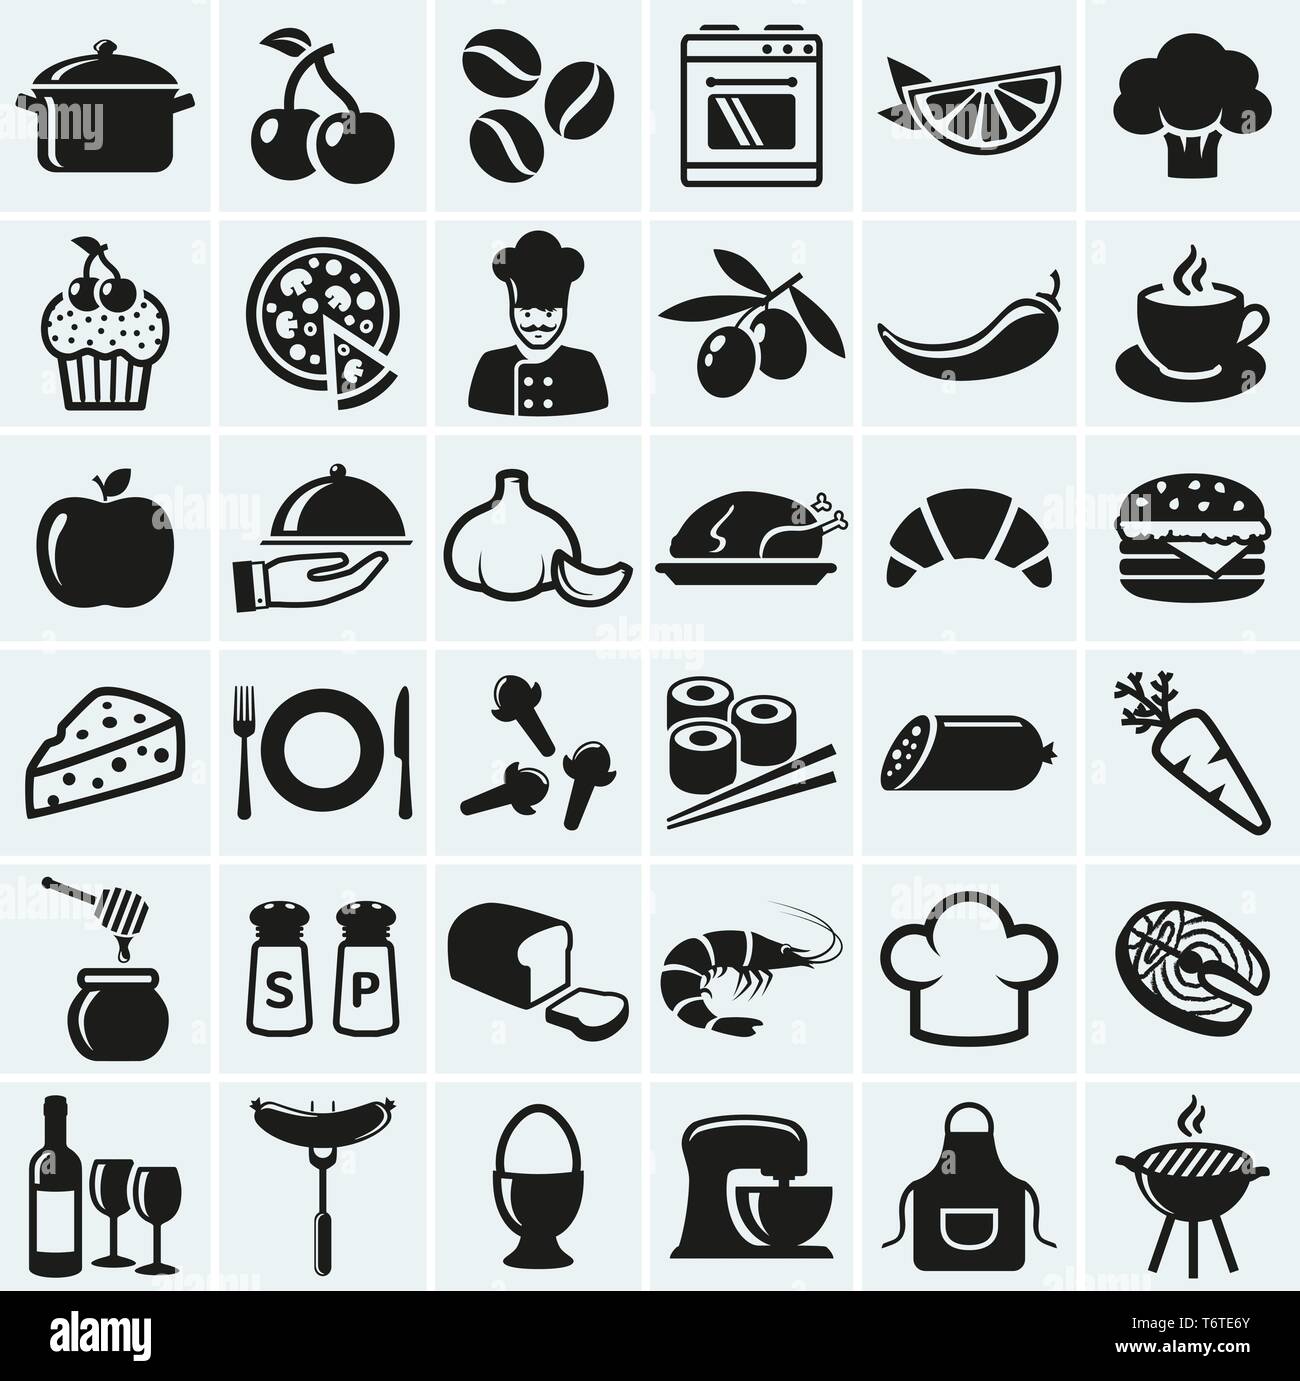 Essen und Kochen Web Icons. Einstellen der schwarzen Symbole für einen kulinarischen Motto. Gesundes und ungesundes Essen, Obst und Gemüse, Gewürze, Kochutensilien und vieles mehr. Stock Vektor